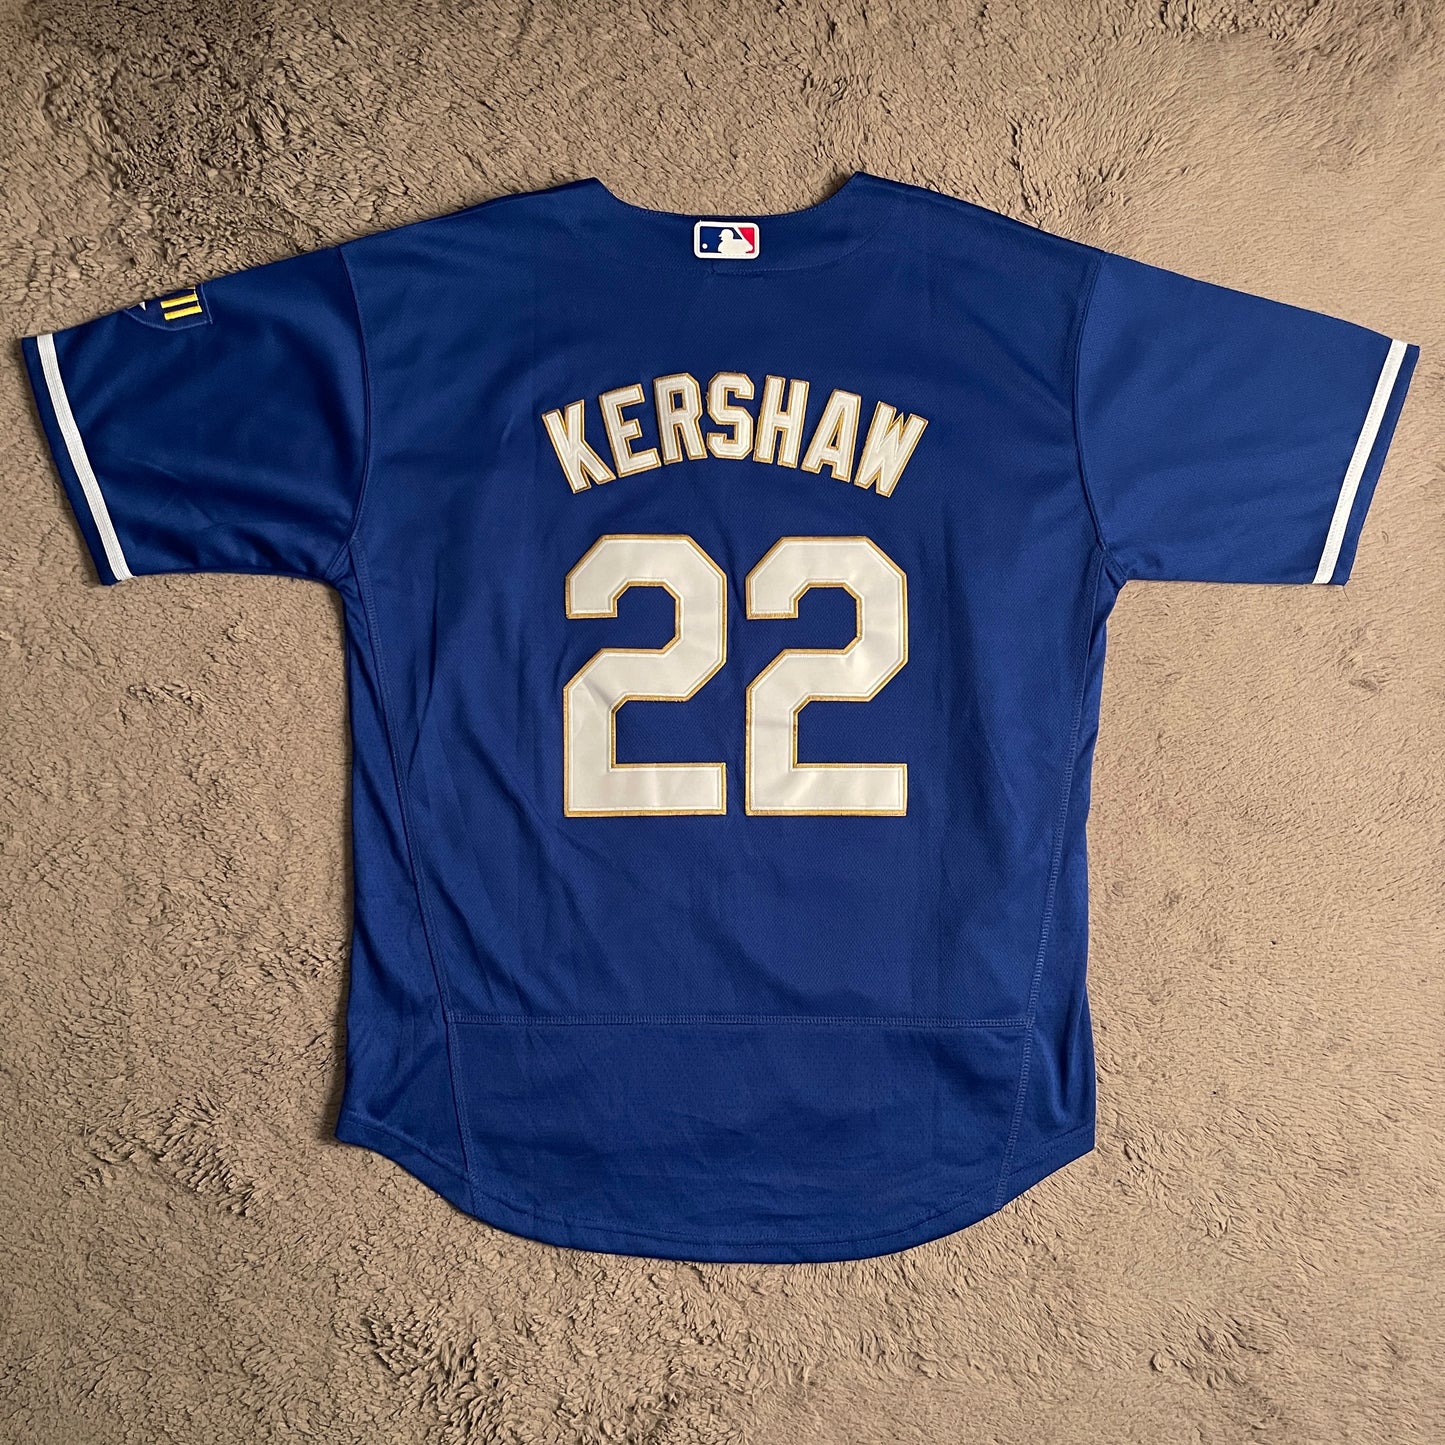 2020 MLB Champions LA Dodgers Jersey 22 Kershaw (M)